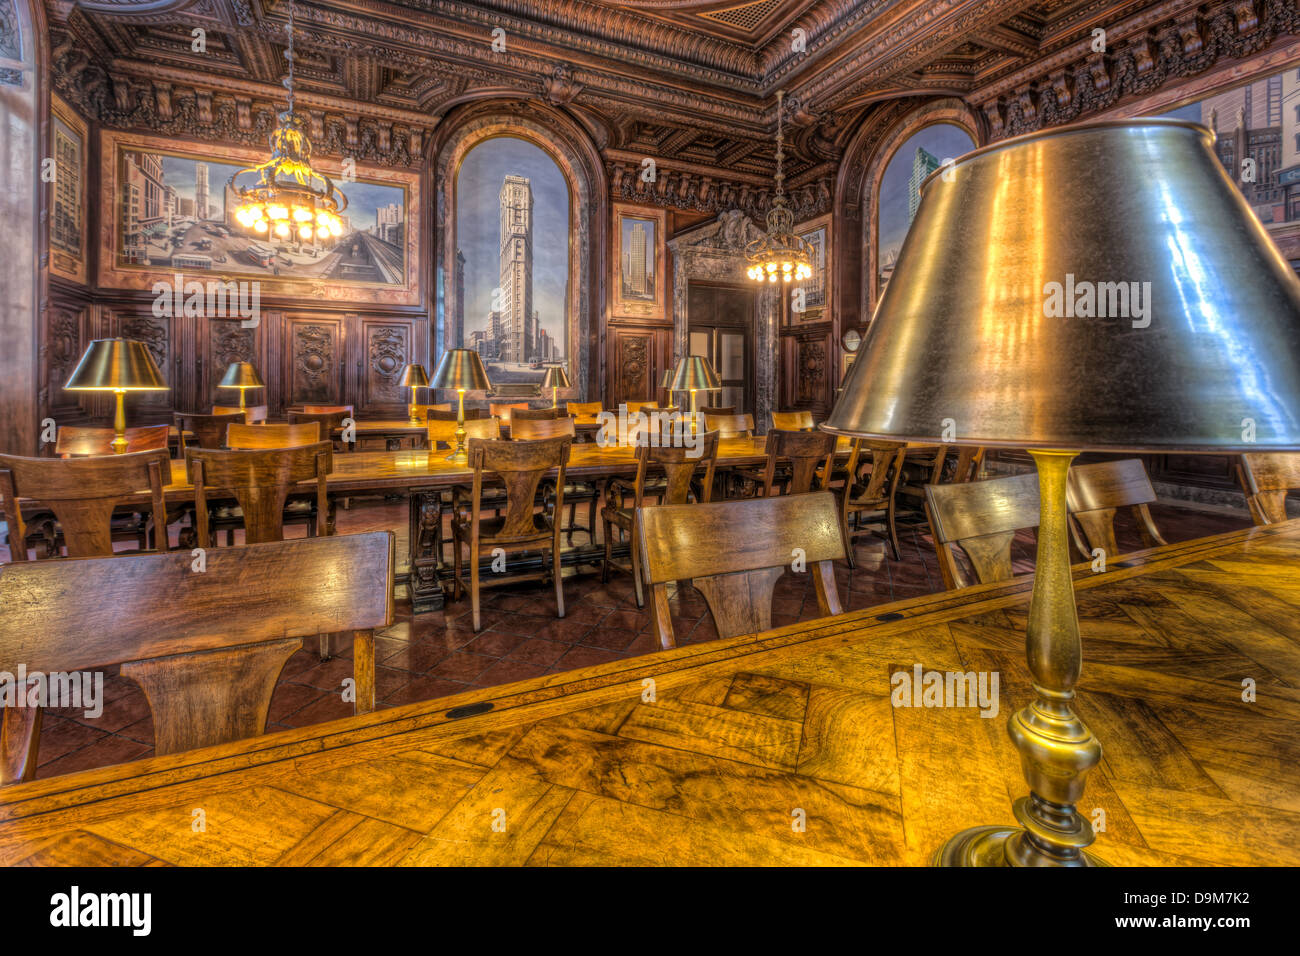 La boiserie in legno e affreschi decorano la Biblioteca Pubblica di New York's DeWitt Wallace Sala Periodici. Foto Stock